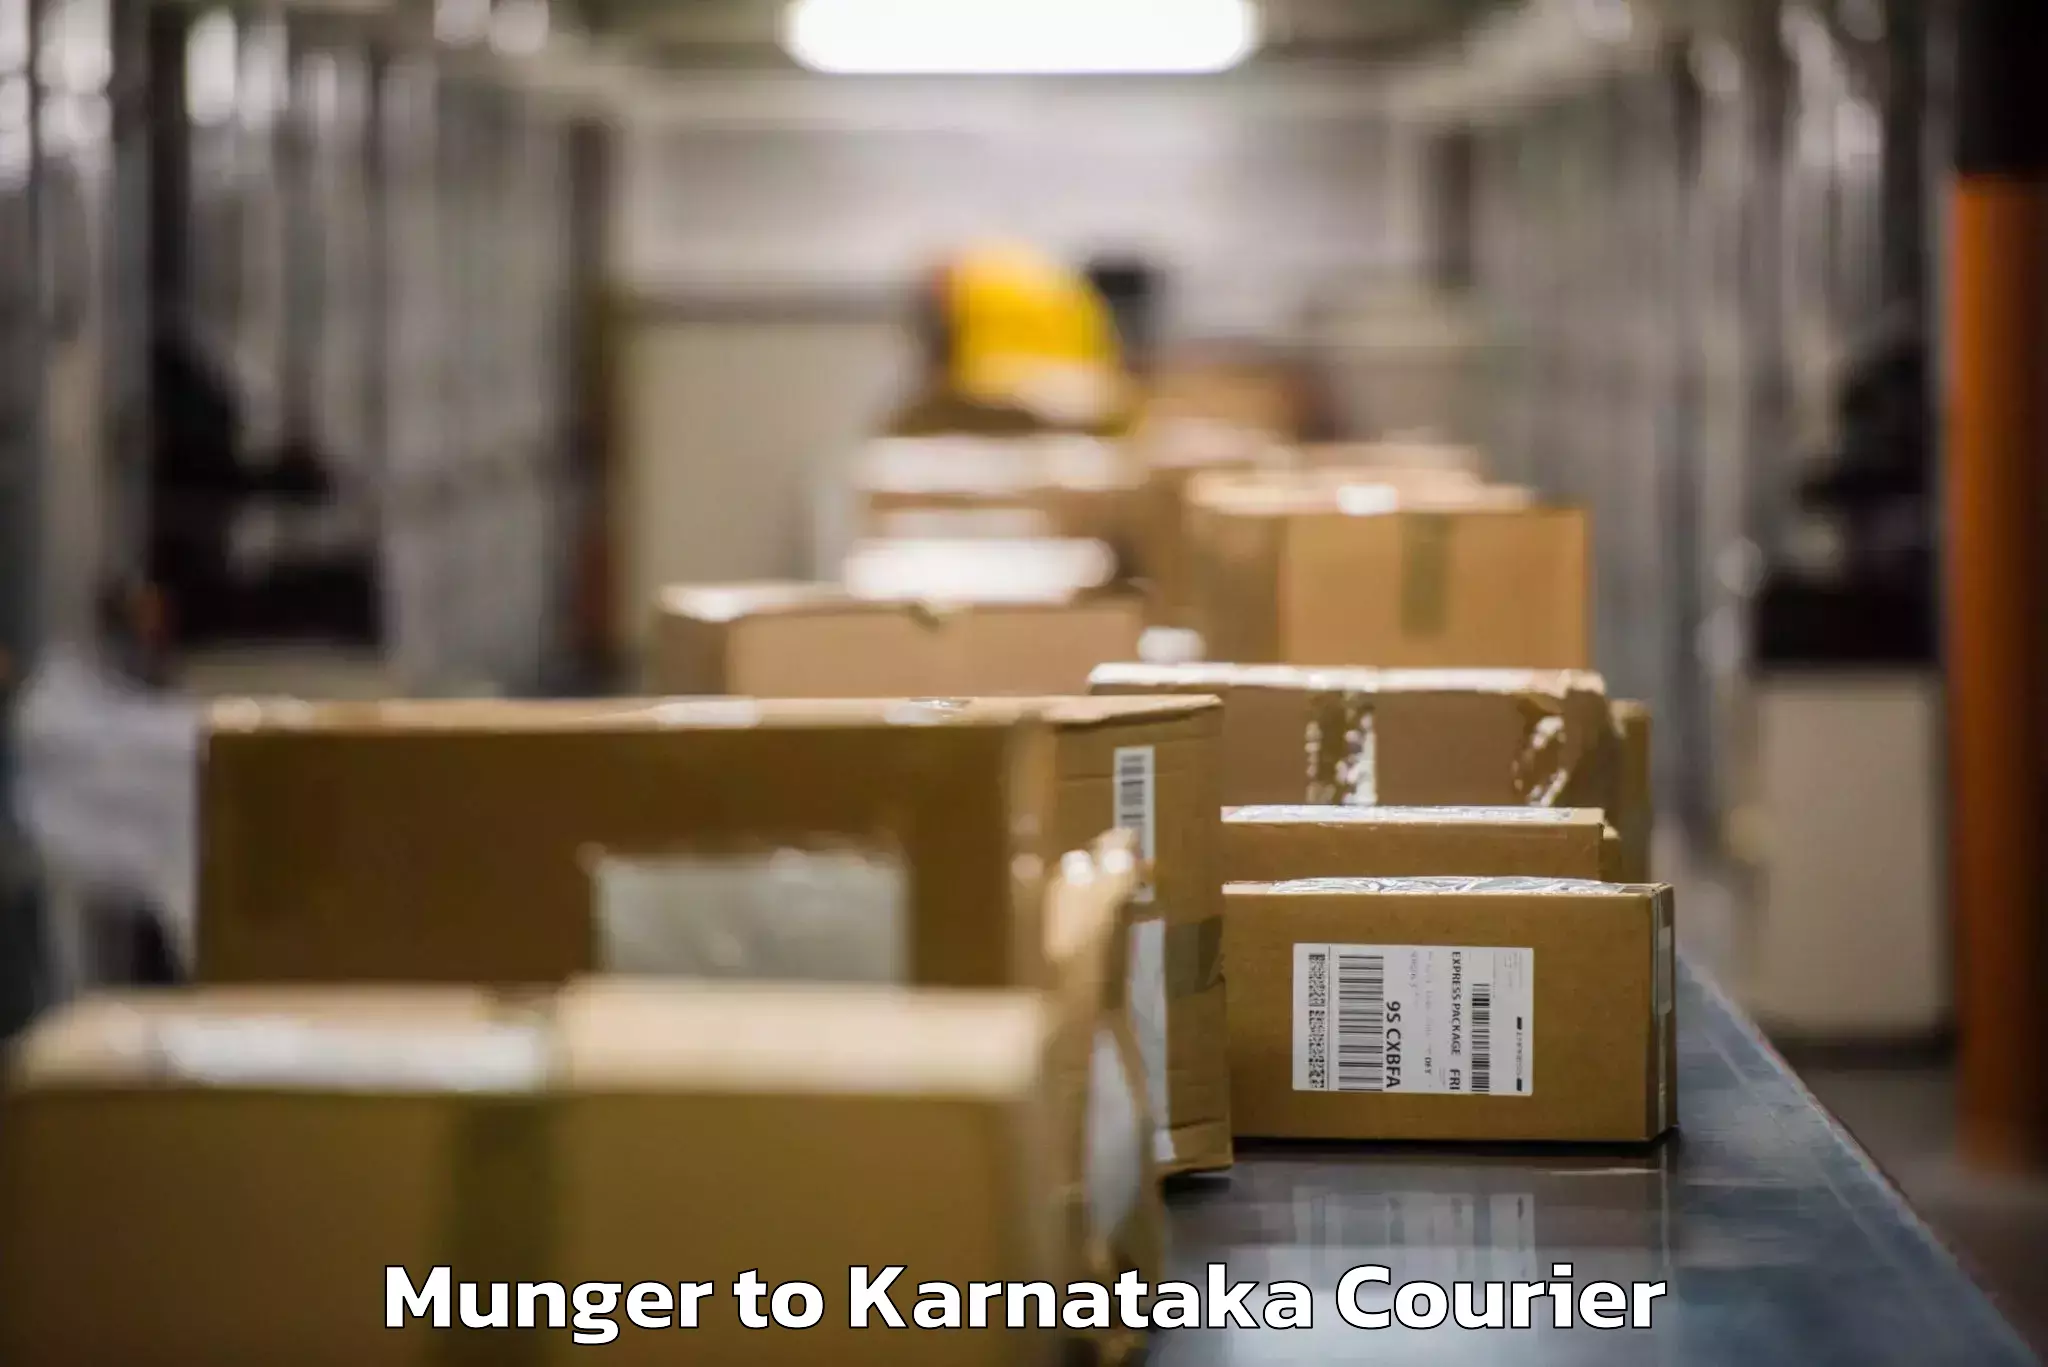 Luggage transfer service Munger to Karnataka